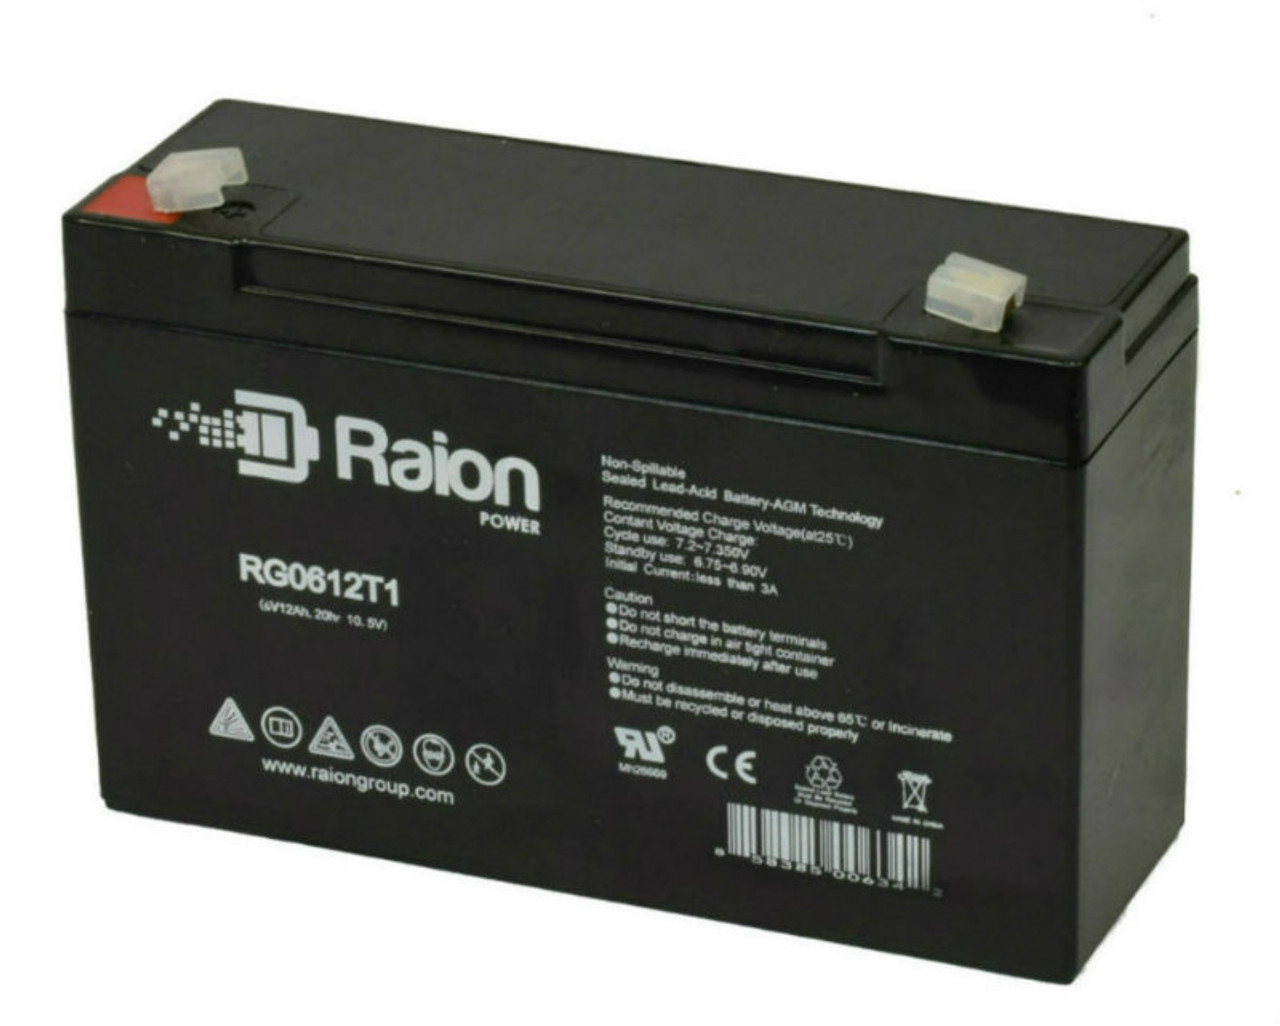 Raion Power RG06120T1 Replacement 6V 12Ah Emergency Light Battery for Emergi-Lite 12-KSM-54